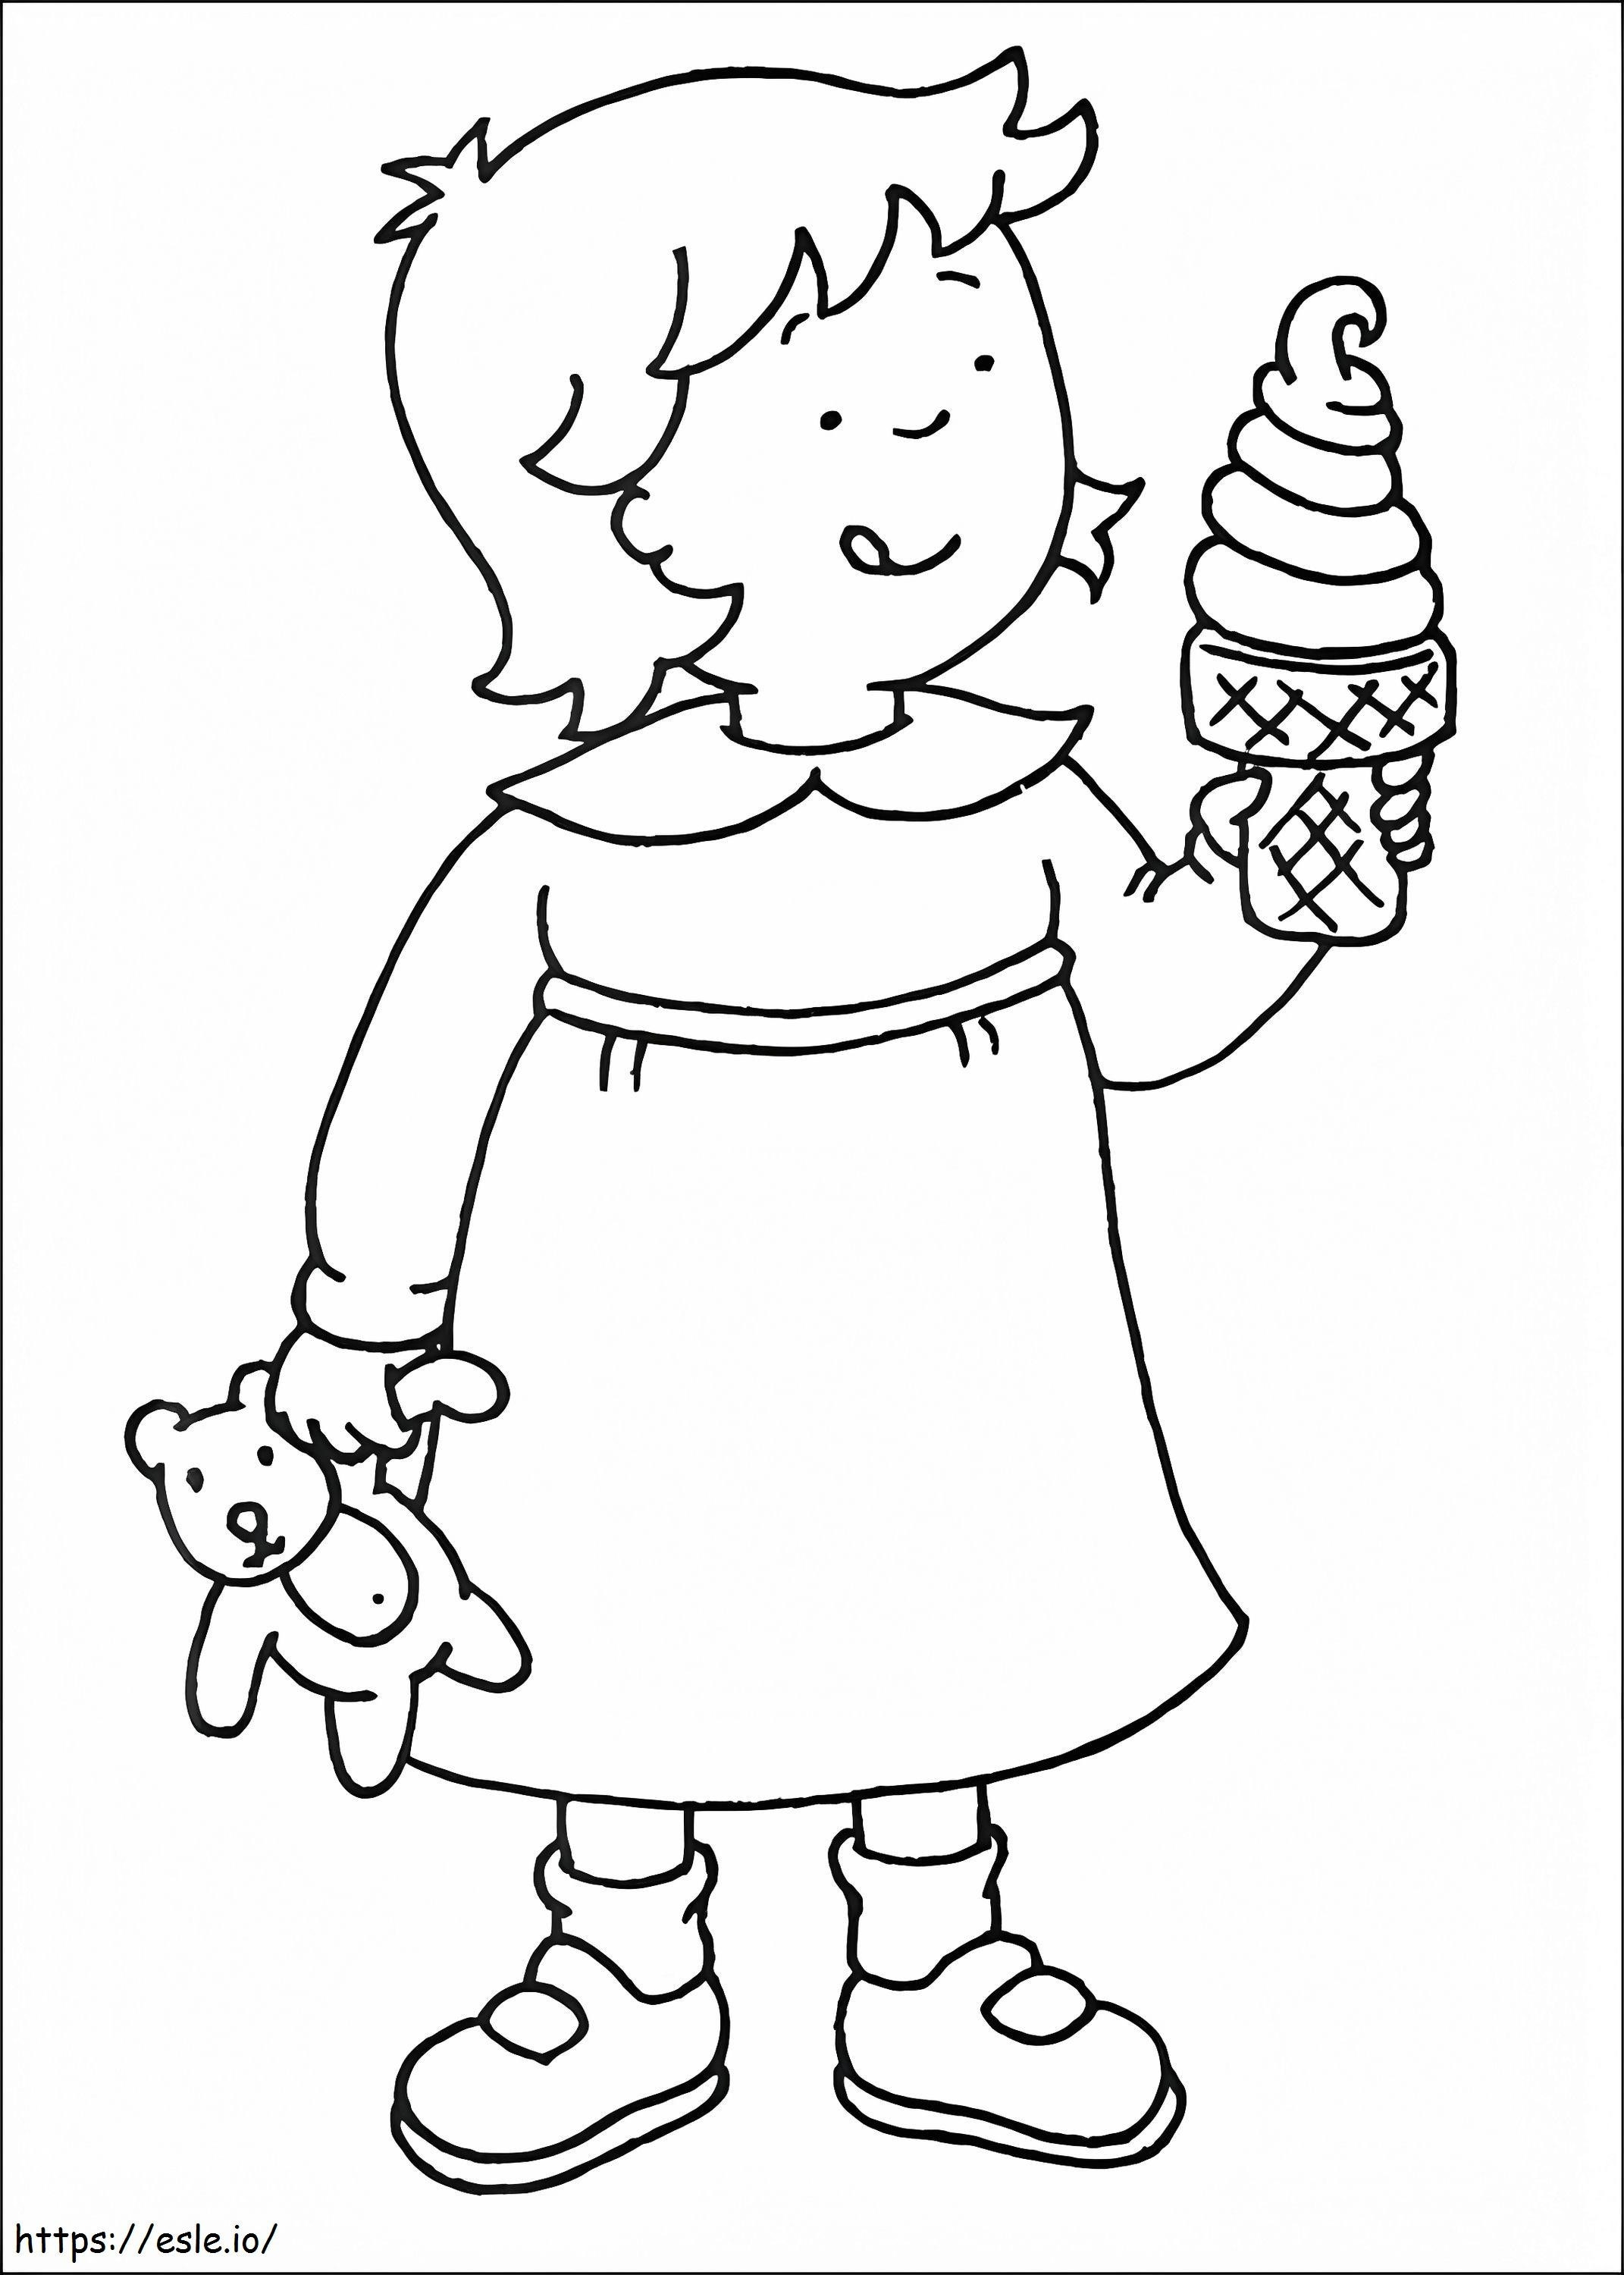  Rosie Dondurma Yiyor A4 boyama